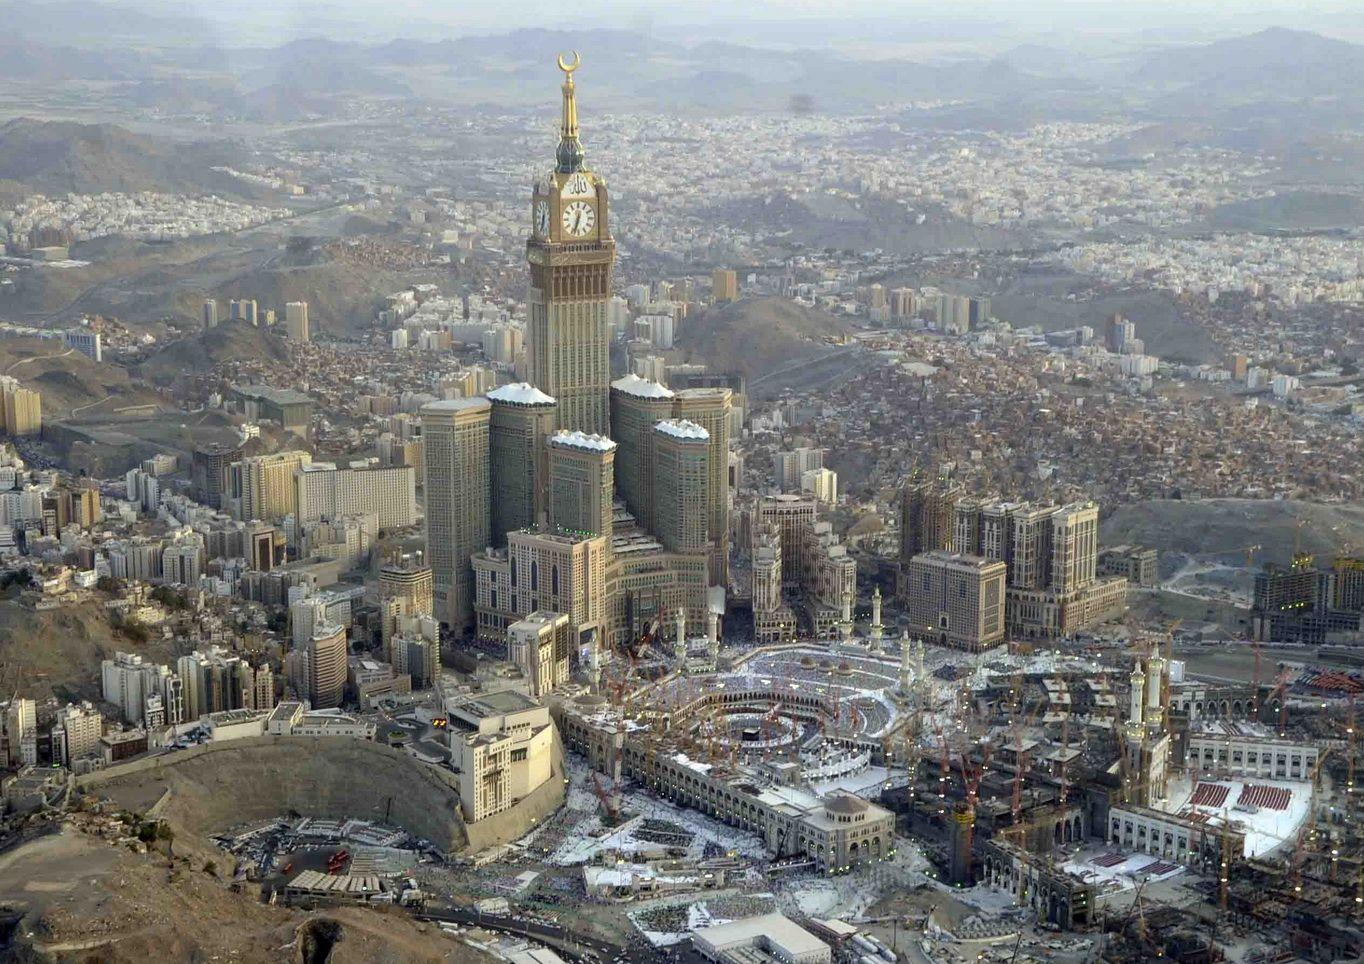 makkah royal clock tower